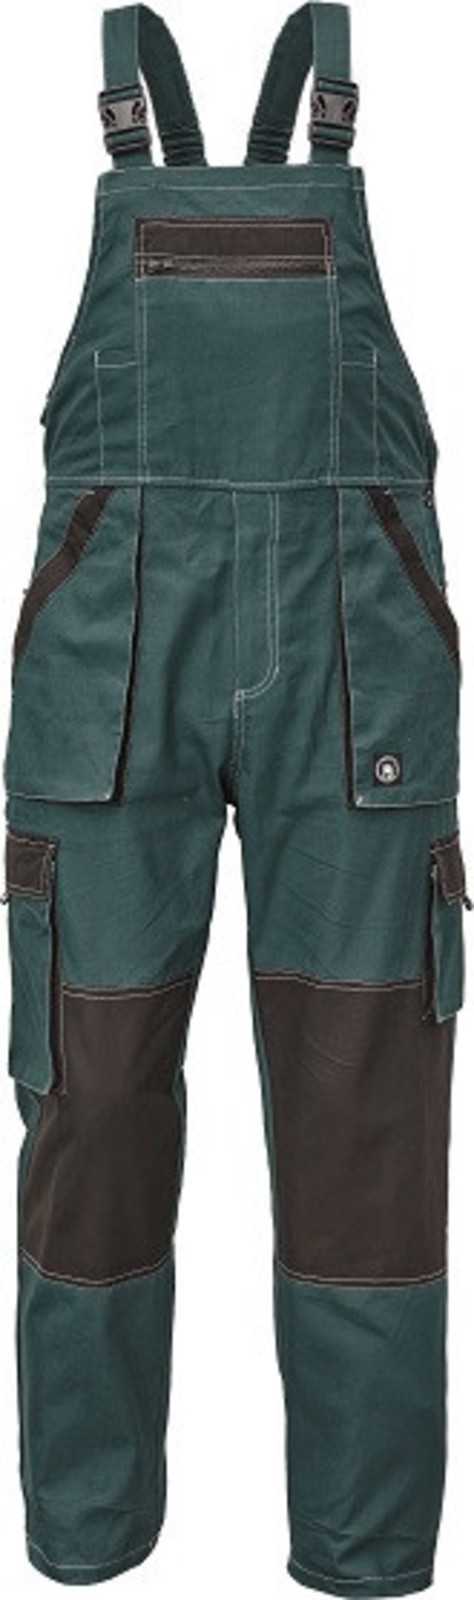 Tenšie bavlnené montérky na traky Max Summer - veľkosť: 64, farba: zelená/čierna